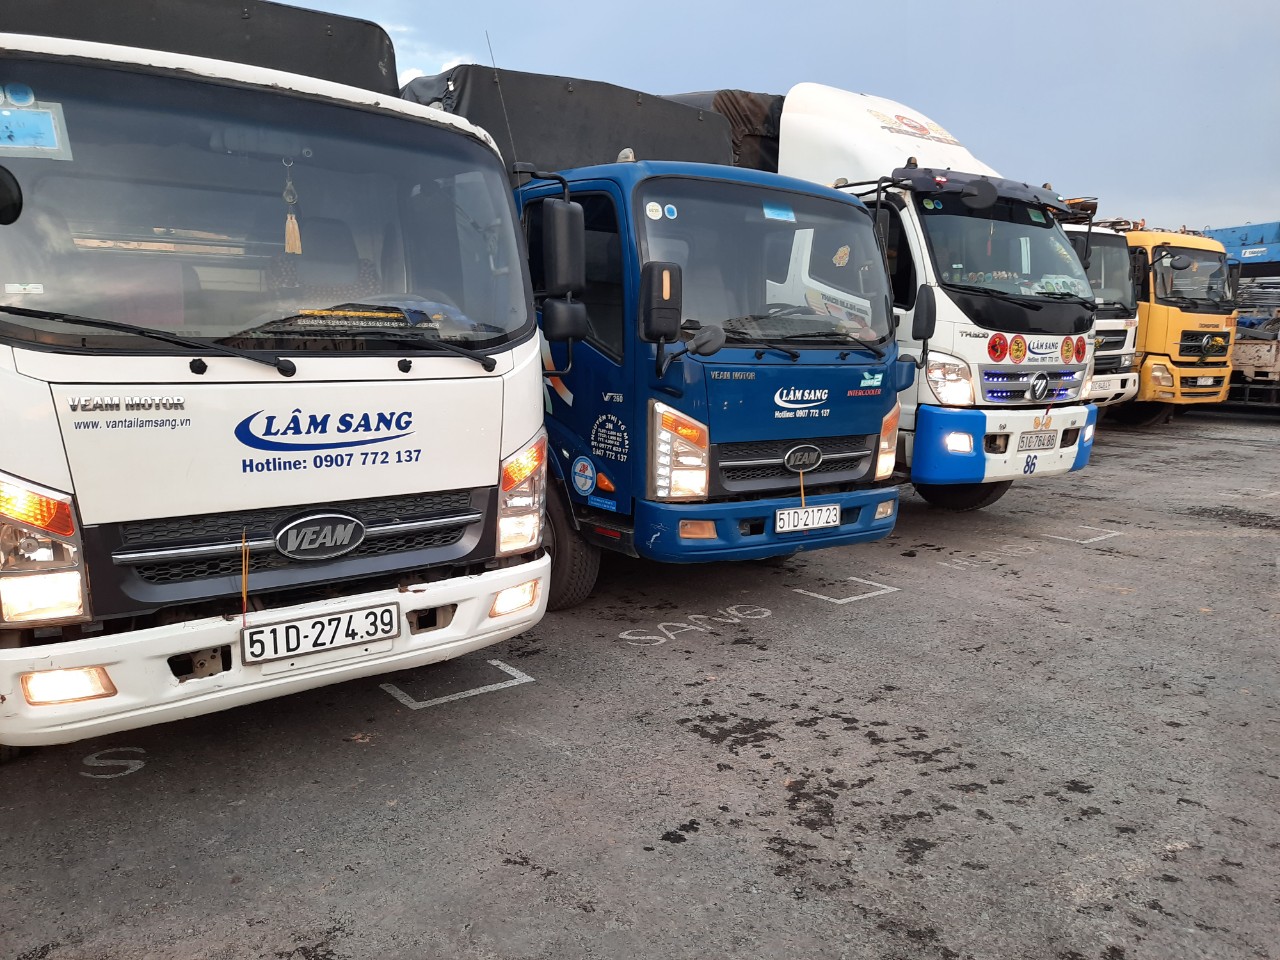 Báo giá dịch vụ xe tải chở hàng quận 3, vui lòng liên hệ:  Lâm Sang  .090.777.2137